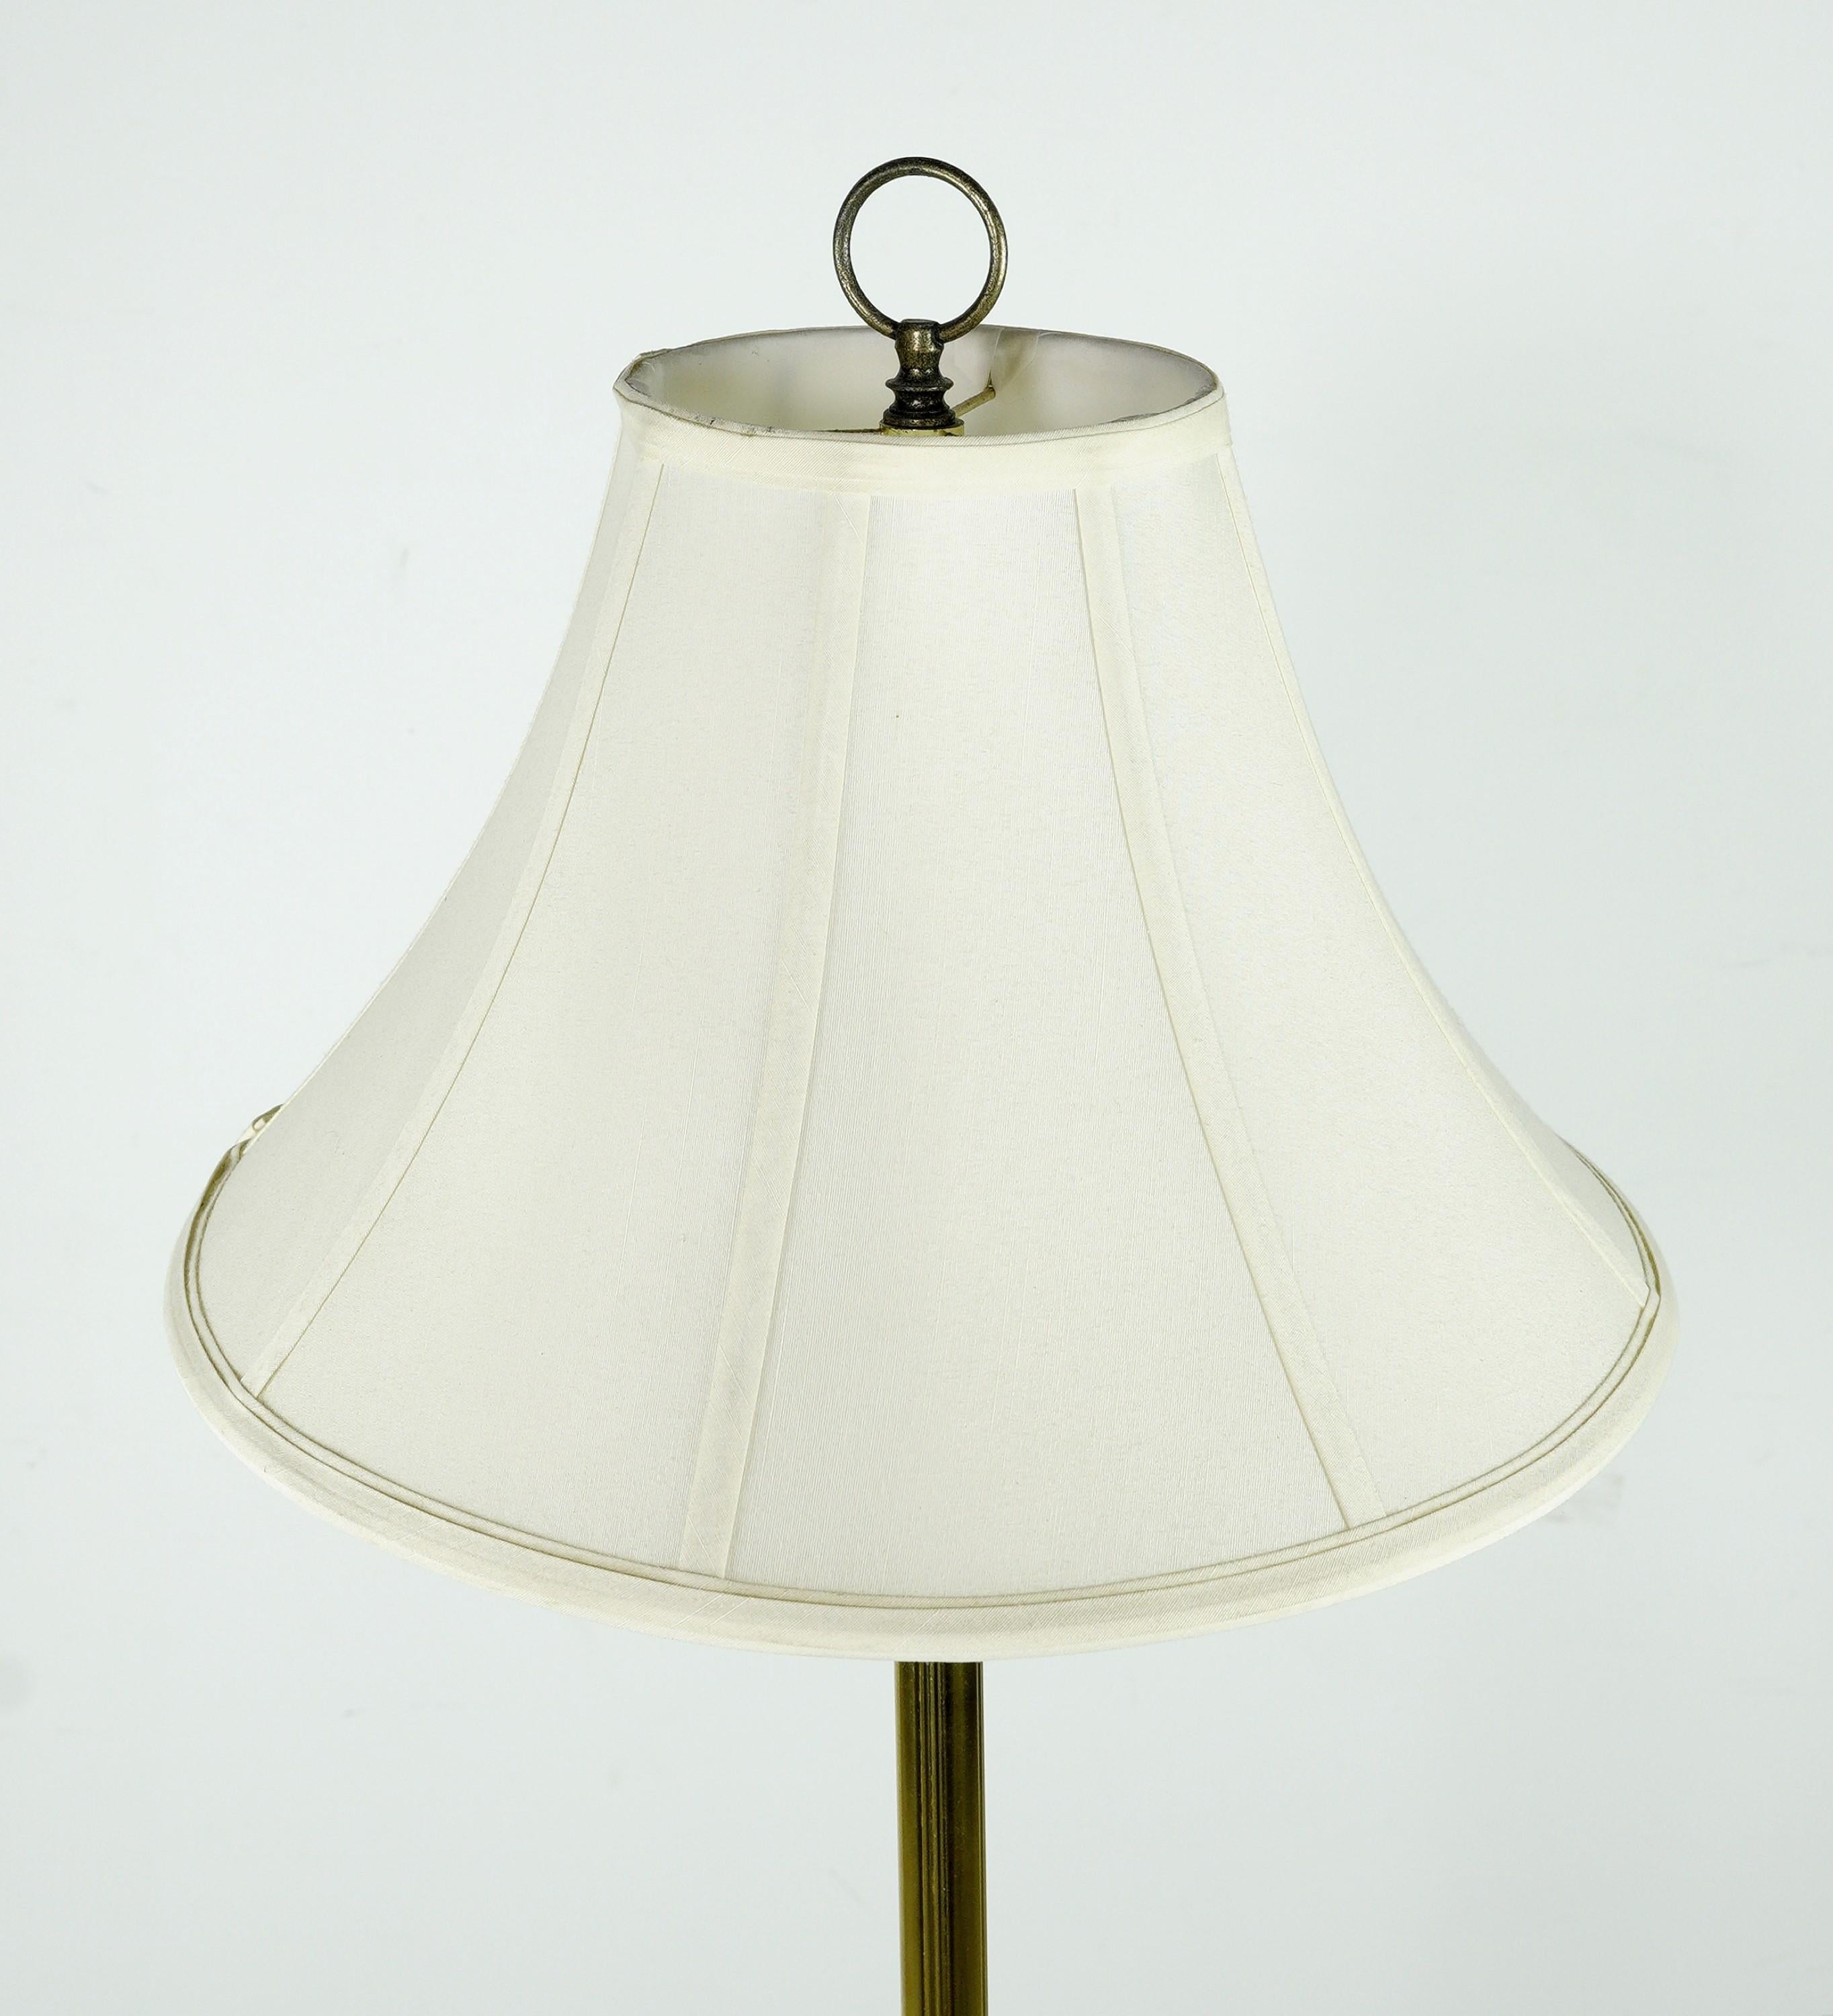 Stehlampe im Mid-Century Modern-Stil mit antiker Messingoberfläche. Mit einer runden Tischplatte aus Glas in der Mitte und dem originalen weißen Lampenschirm. Für eine Standard-Glühbirne mit mittlerem Sockel geeignet. Gereinigt und restauriert.